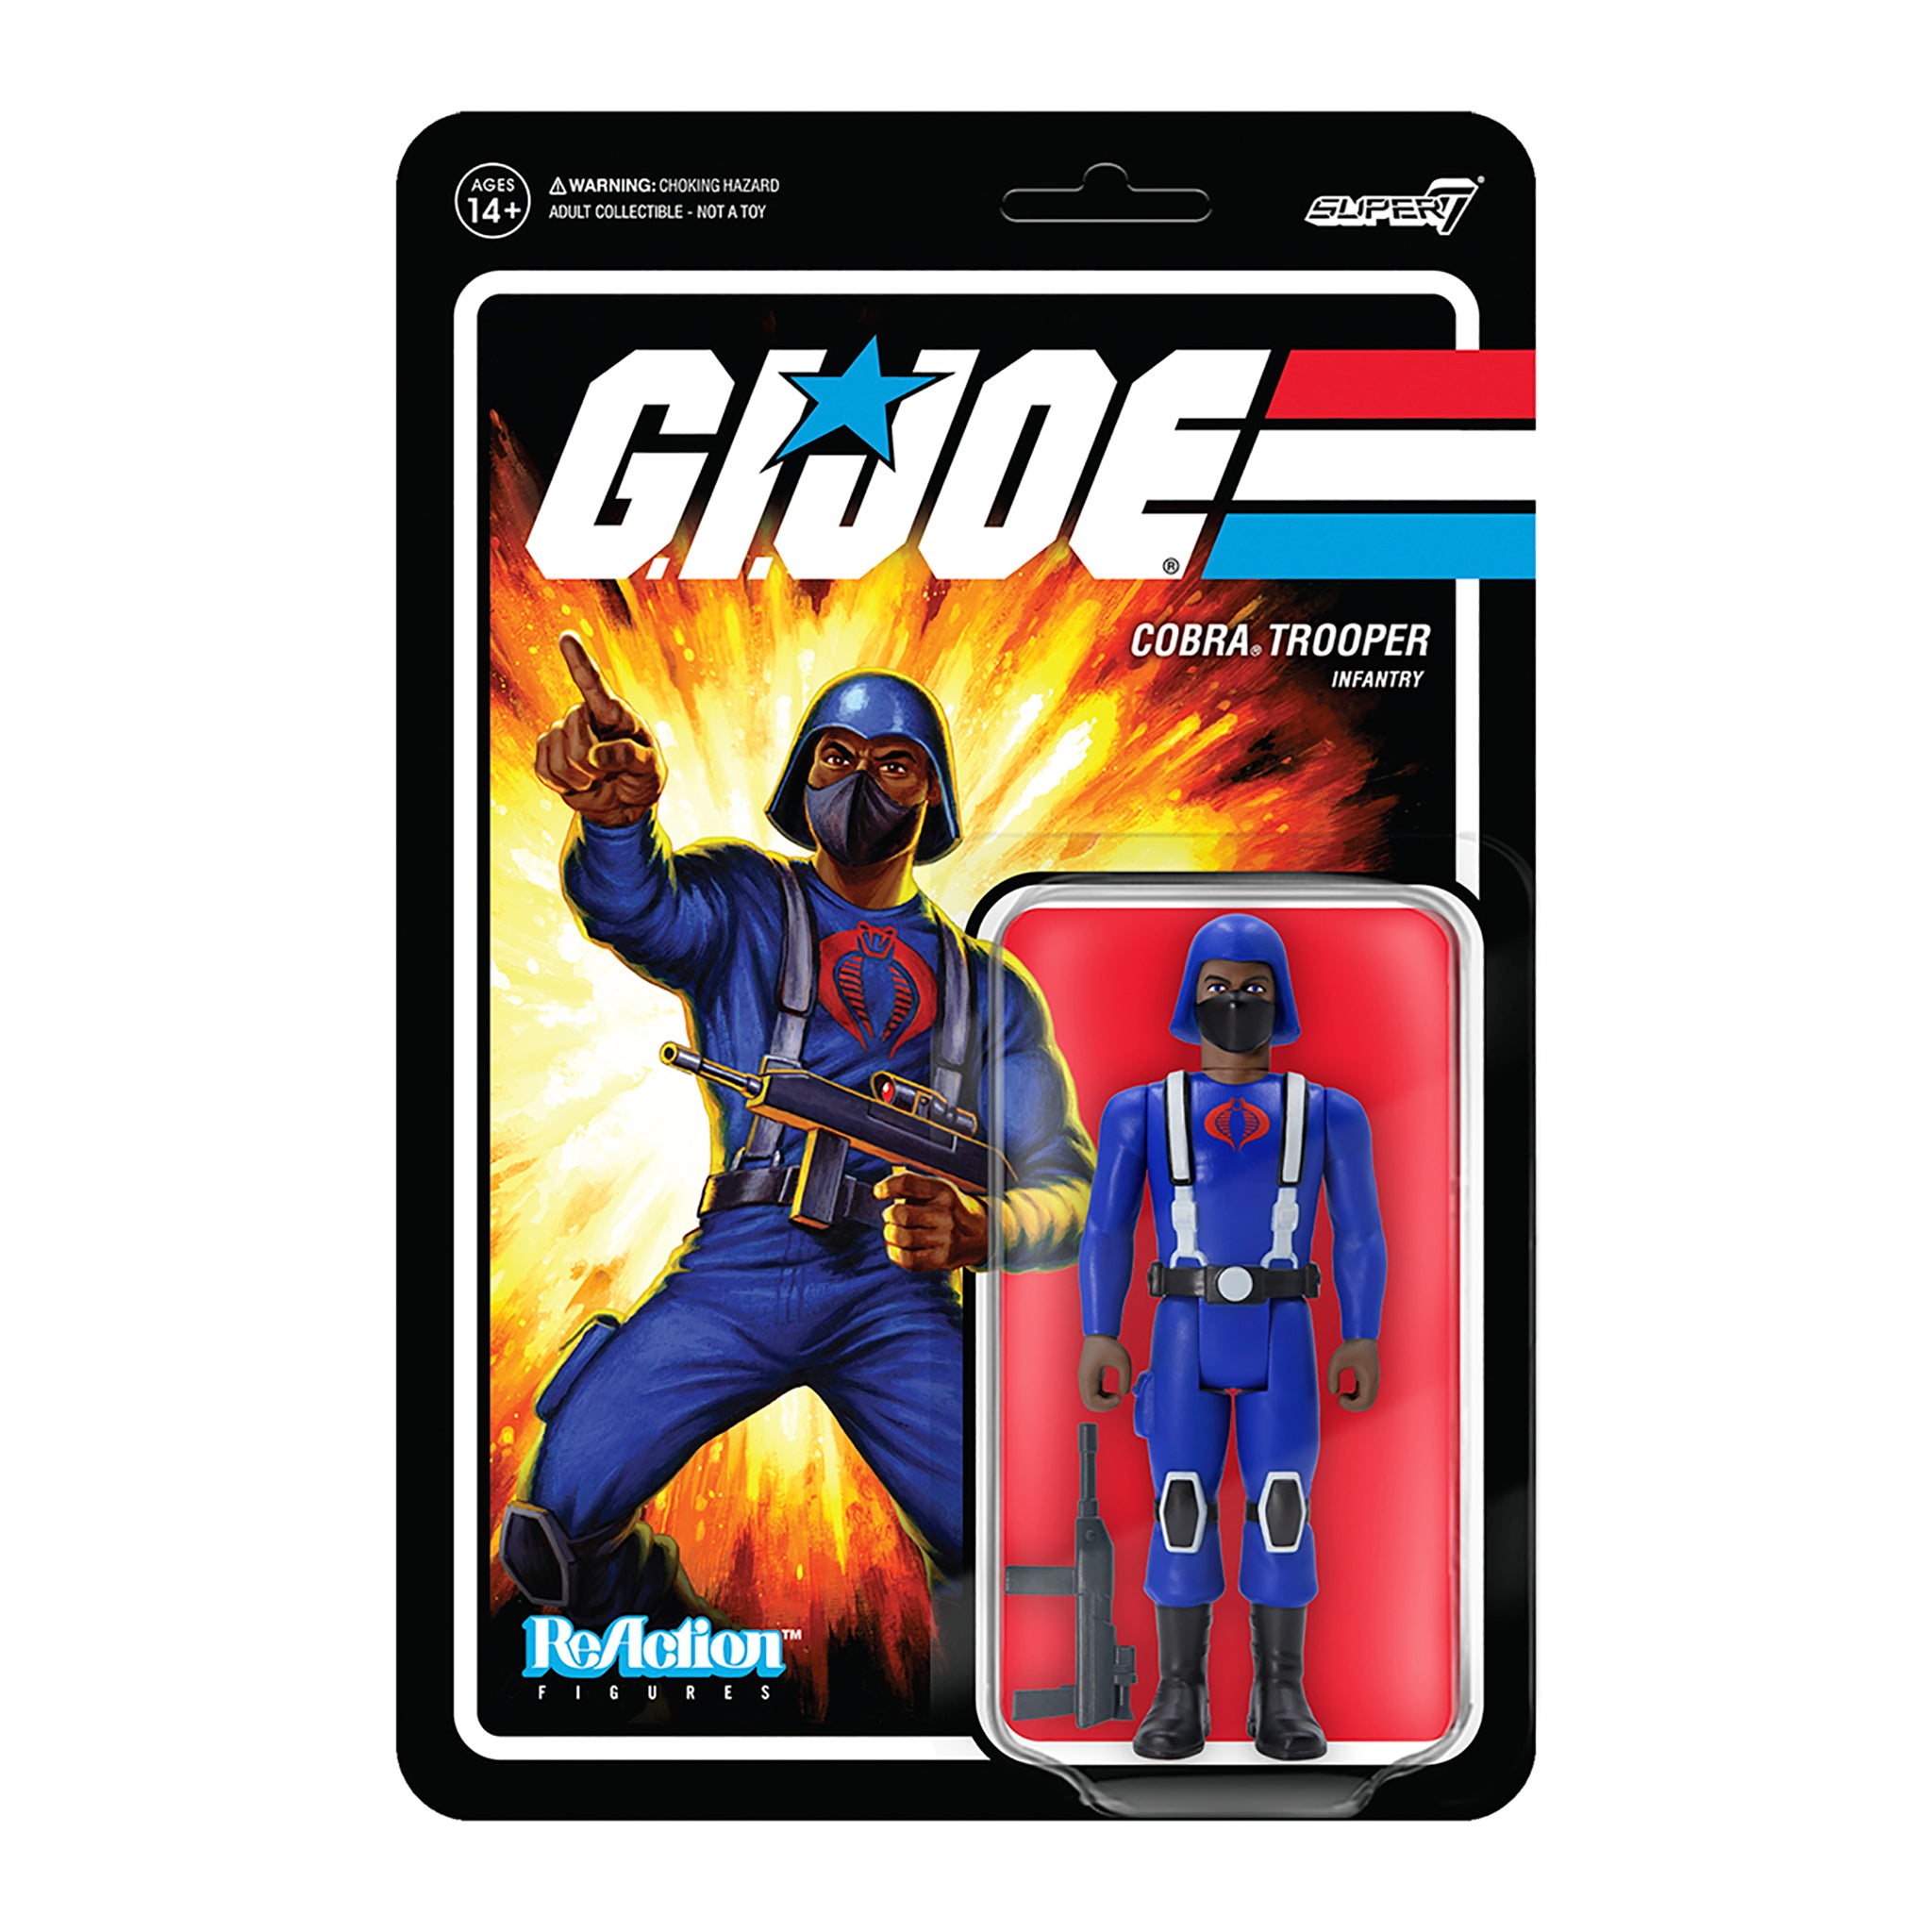 G.I. Joe ReAction Figures Wave 1 - Cobra Trooper Y-back (Brown)